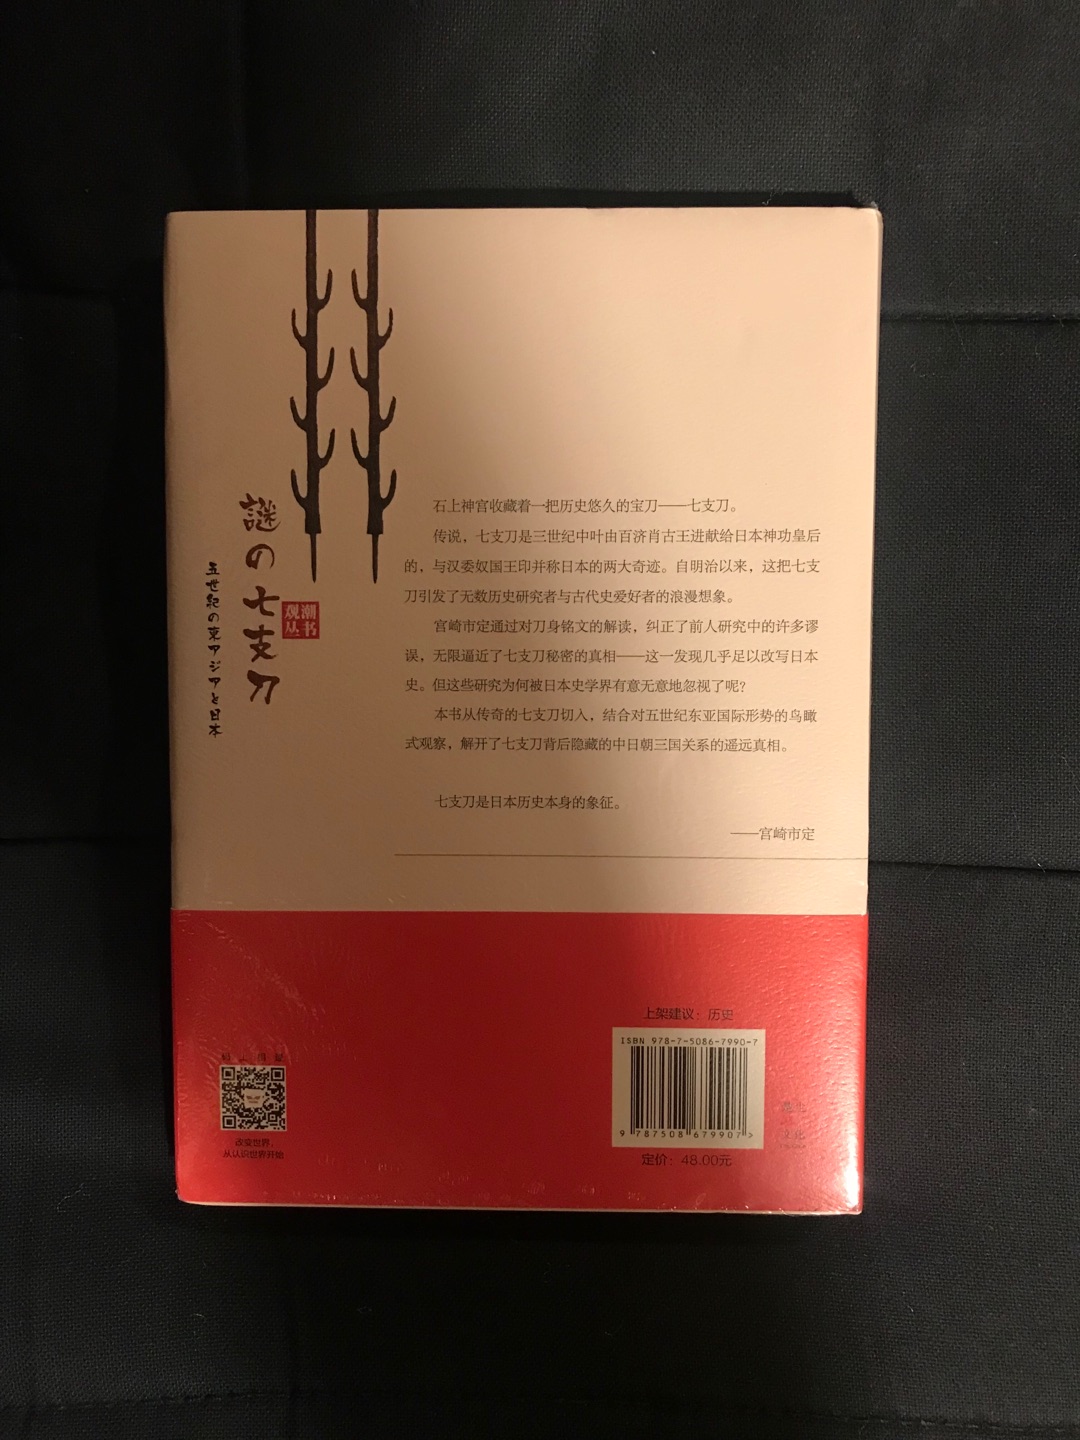 这两年国内出版界终于发现了宫崎市定的厉害，新书层出不穷。这本书虽然篇幅不大，但是研究角度和方法非常好，力荐！